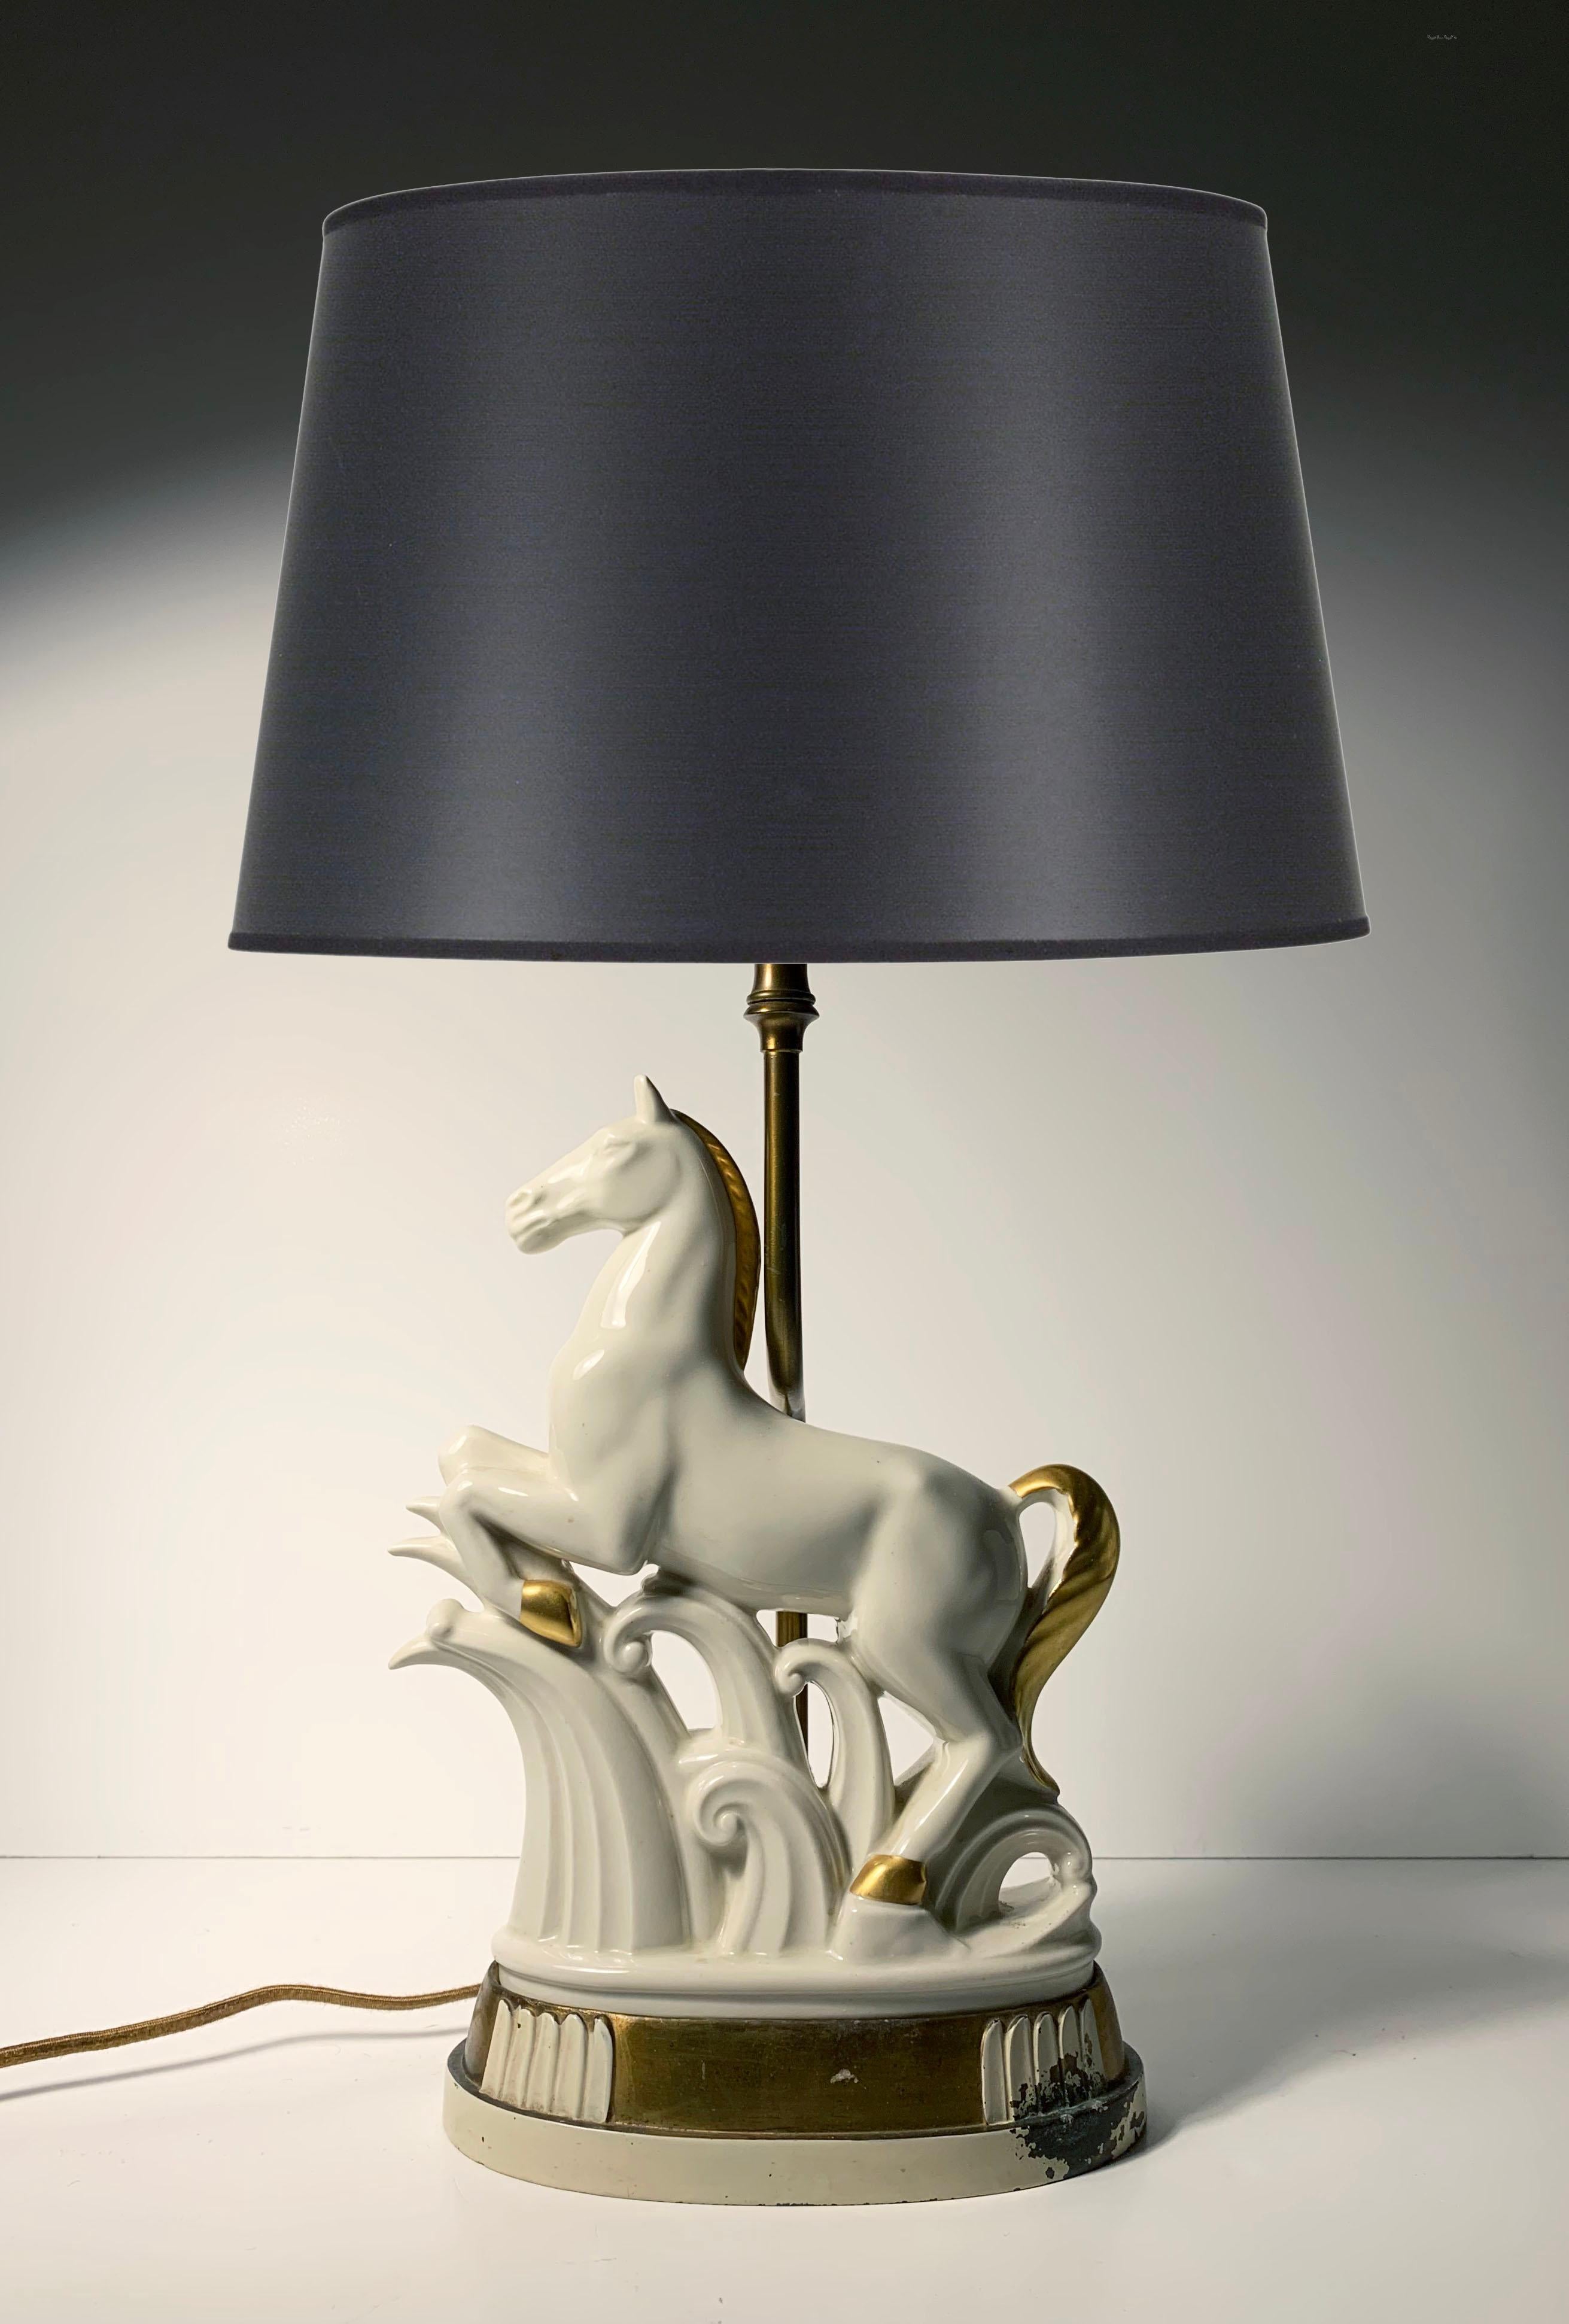 Art Deco Porzellan Pferd Skulptur Lampe. Eine schöne deco form A. Herkunft oder Hersteller nicht sicher. Auf dem Porzellan befindet sich kein Herstellername. Nur eingeprägte Modellnummer. Höchstwahrscheinlich deutschen Ursprungs.